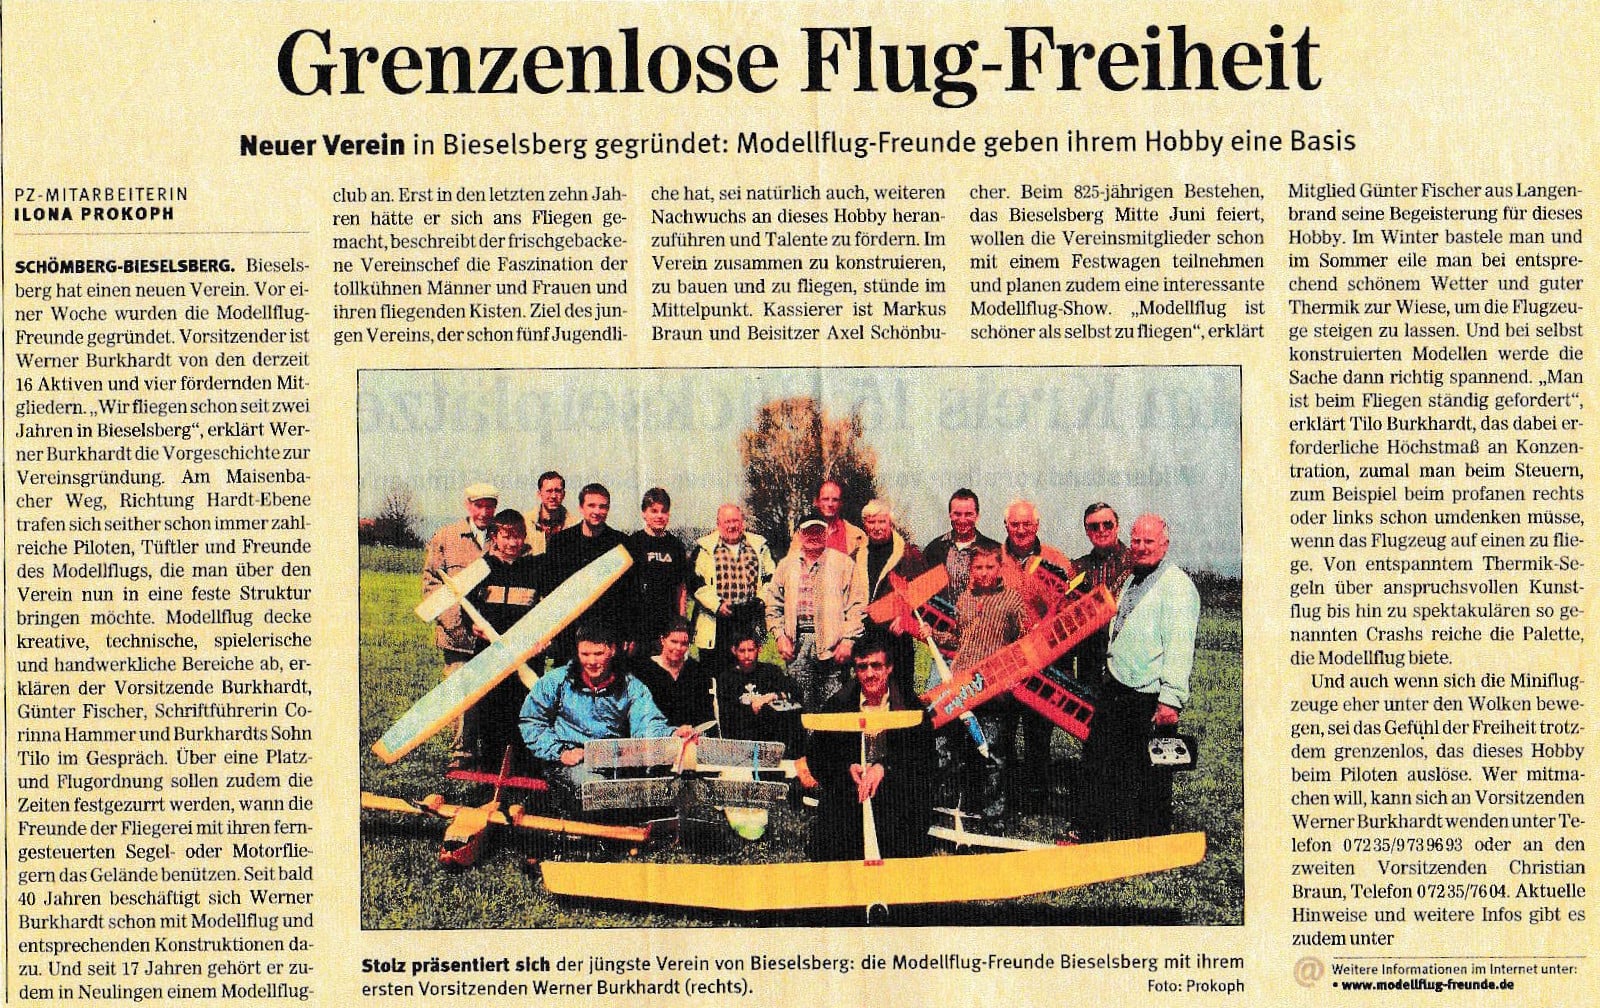 Gründung der Modellflug-Freunde Bieselsberg e.V. 